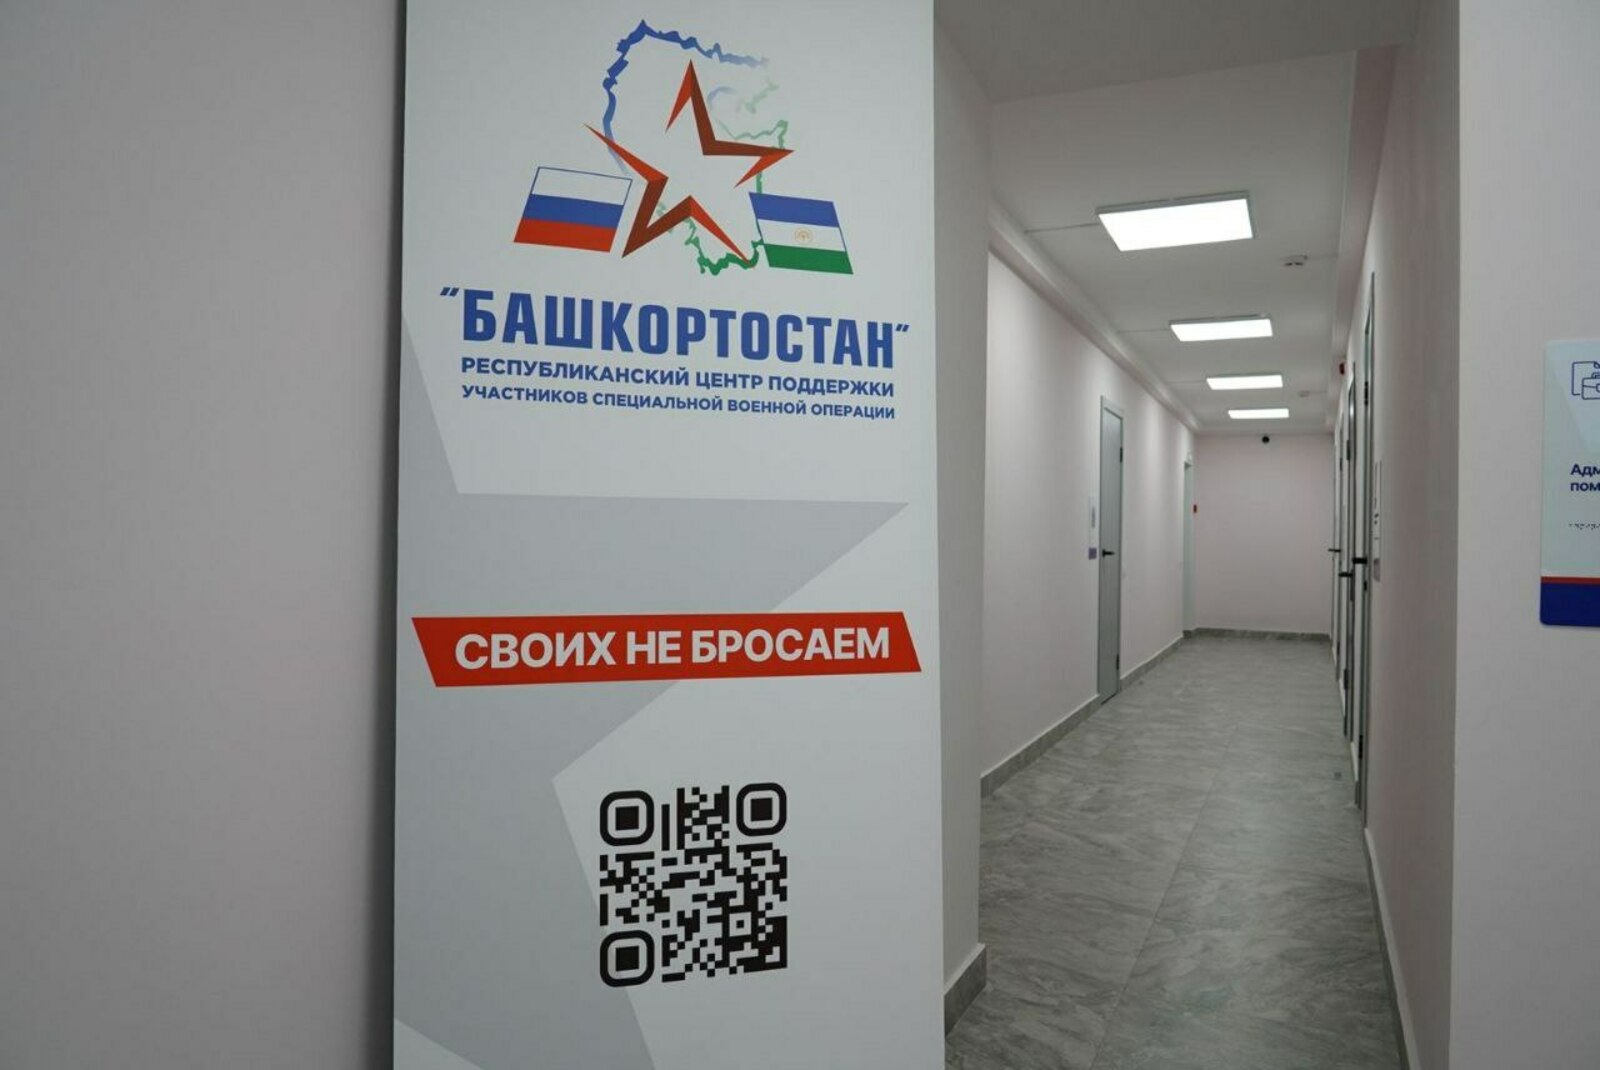 В Башкортостане открылся филиал госфонда "Защитники Отечества"